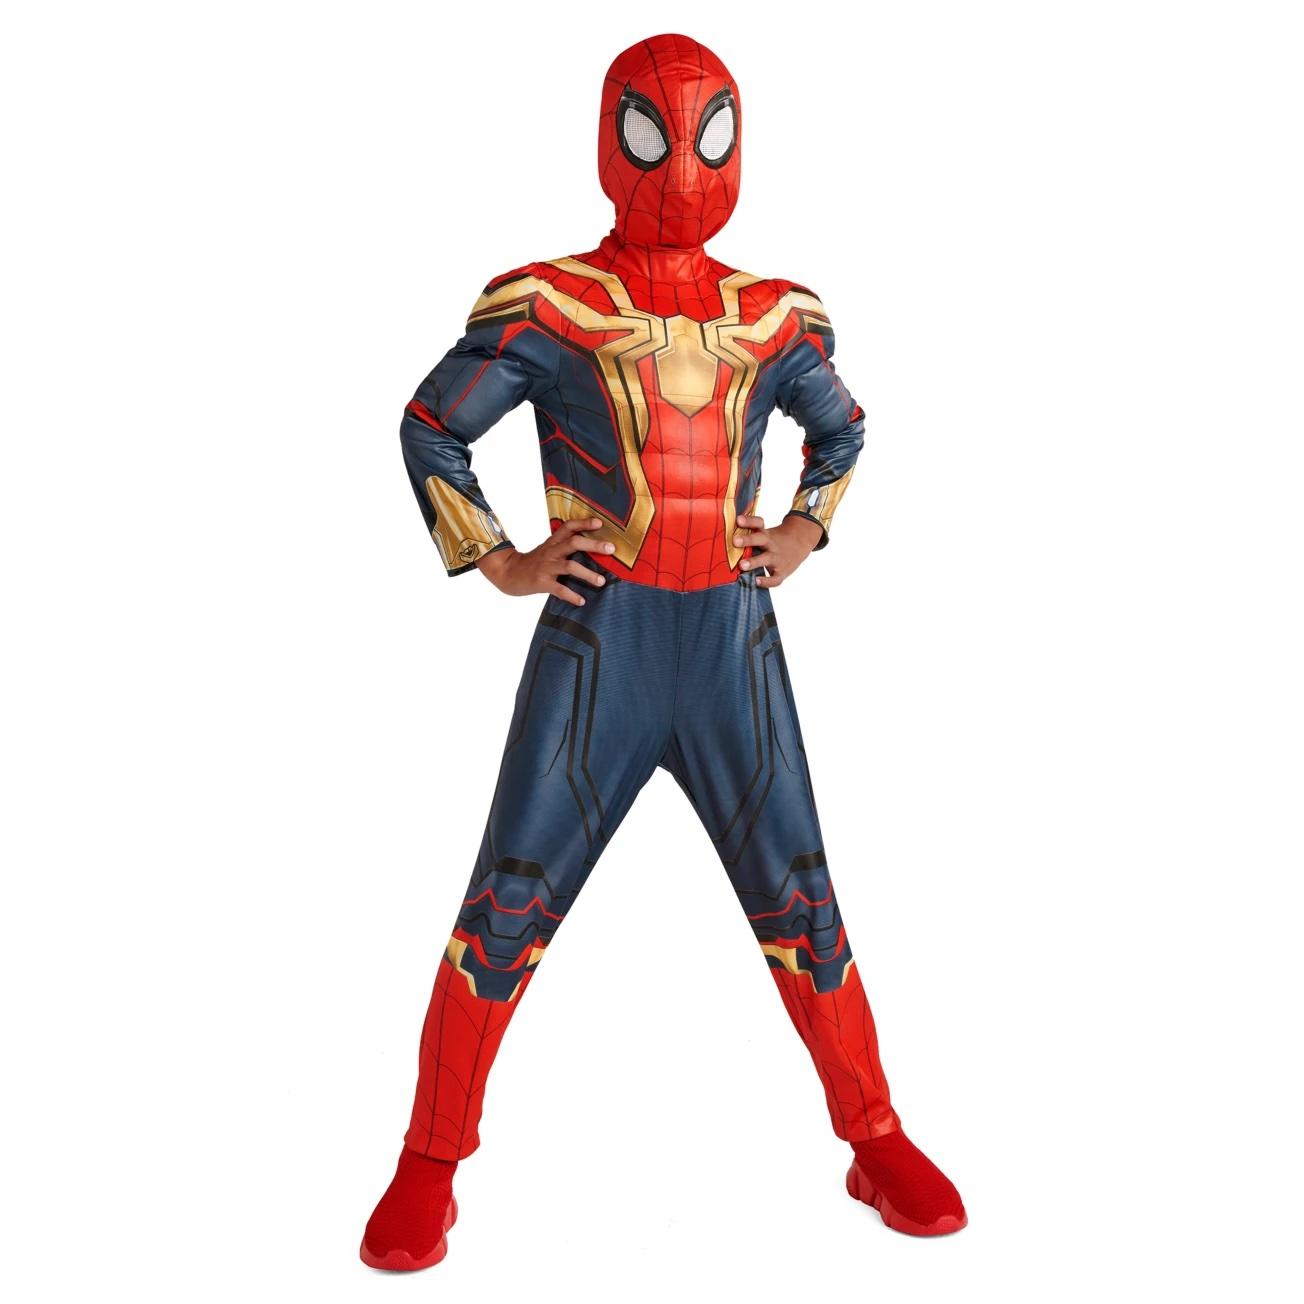 Spider-Man Halloween costume